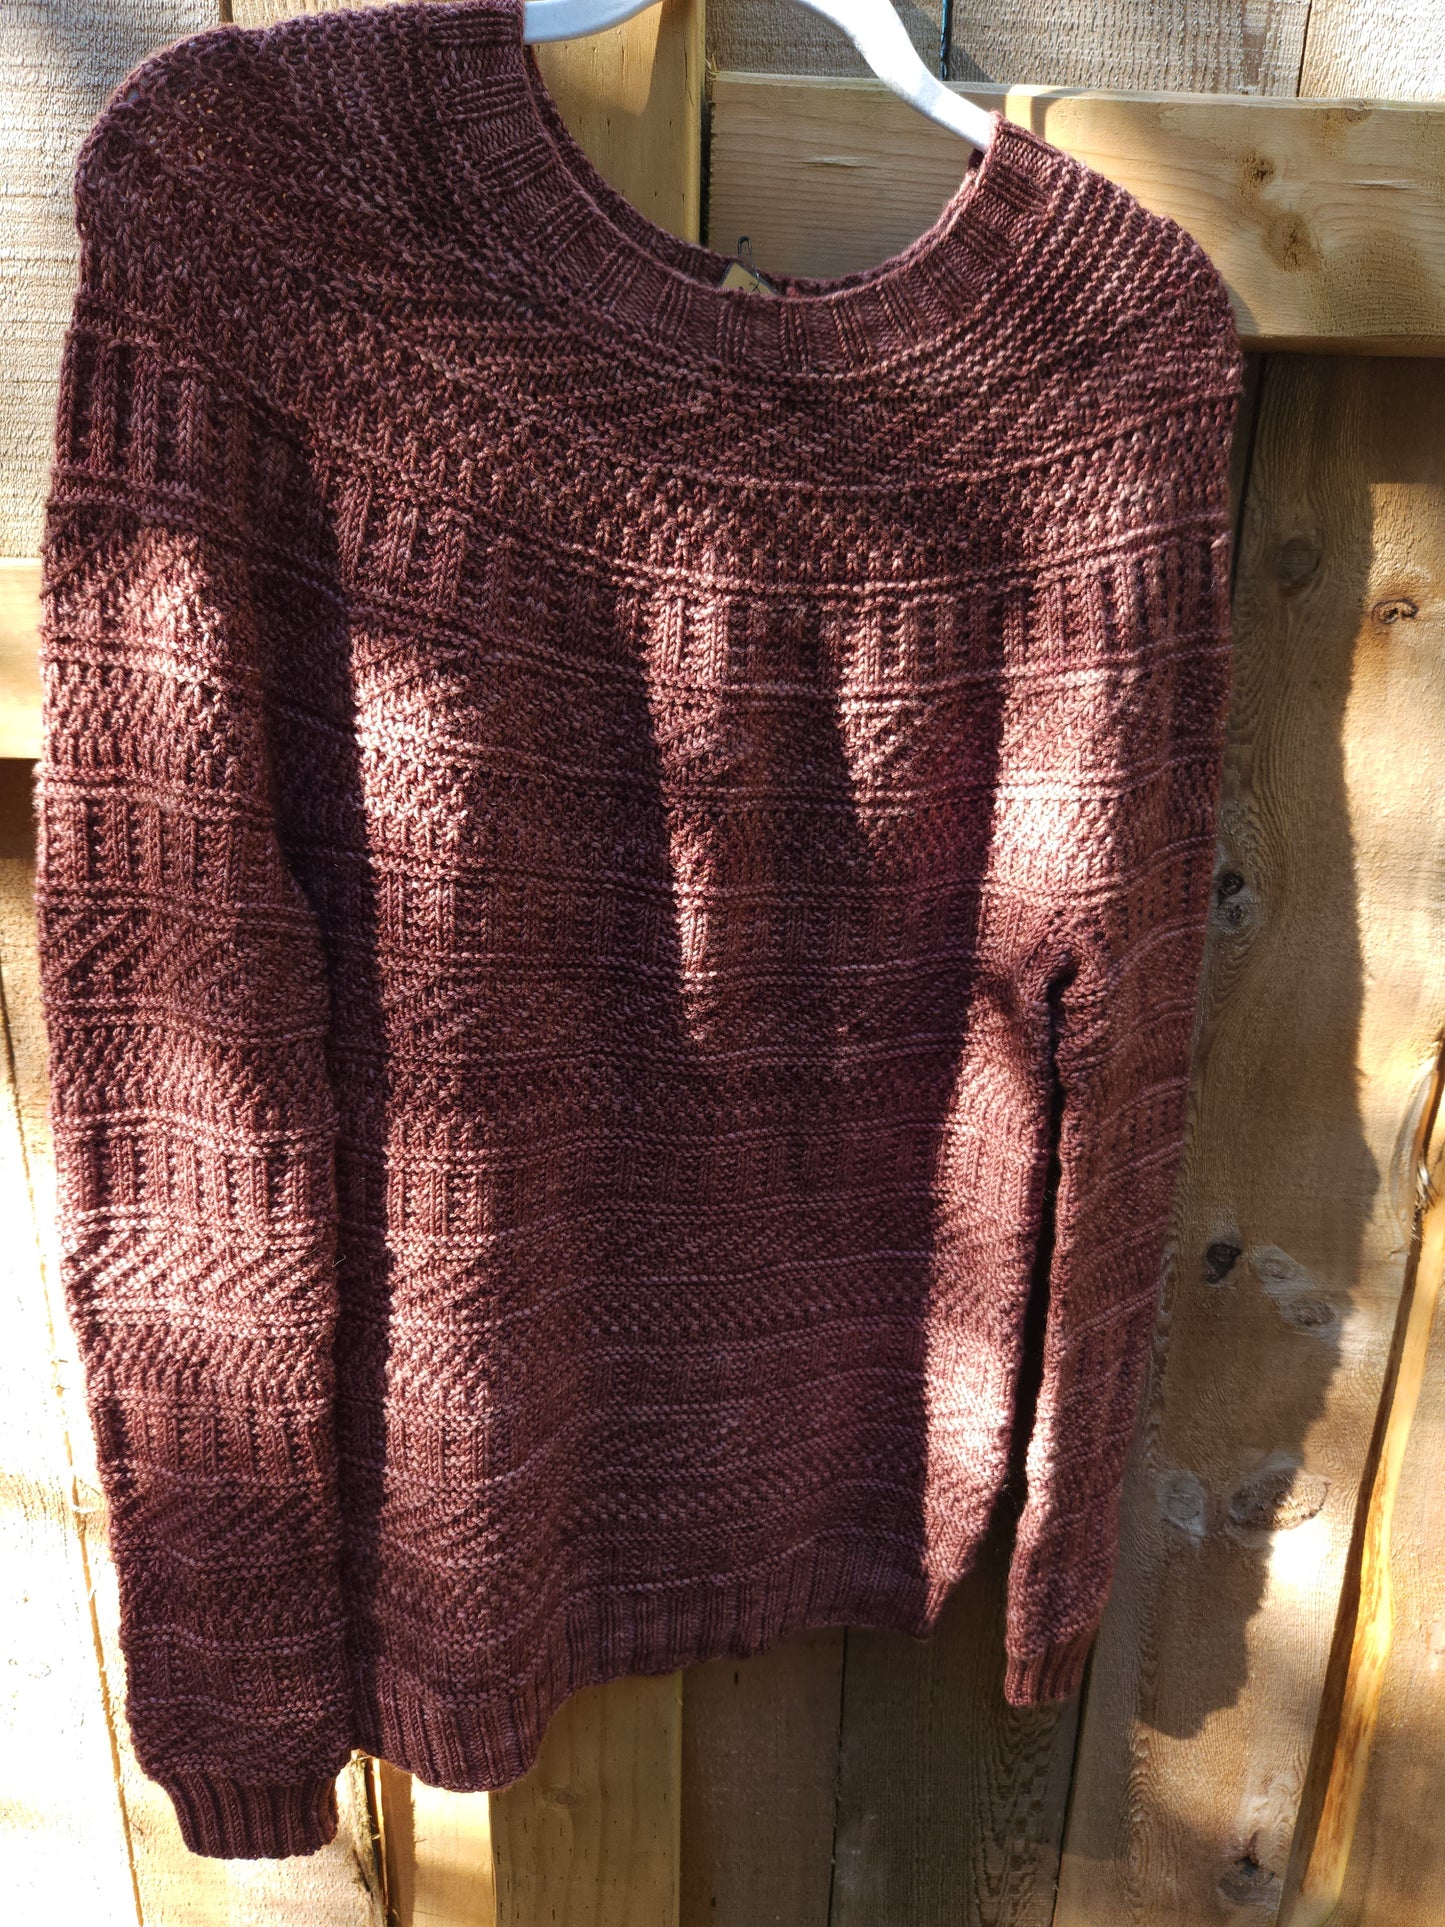 Dustland Sweater Kit